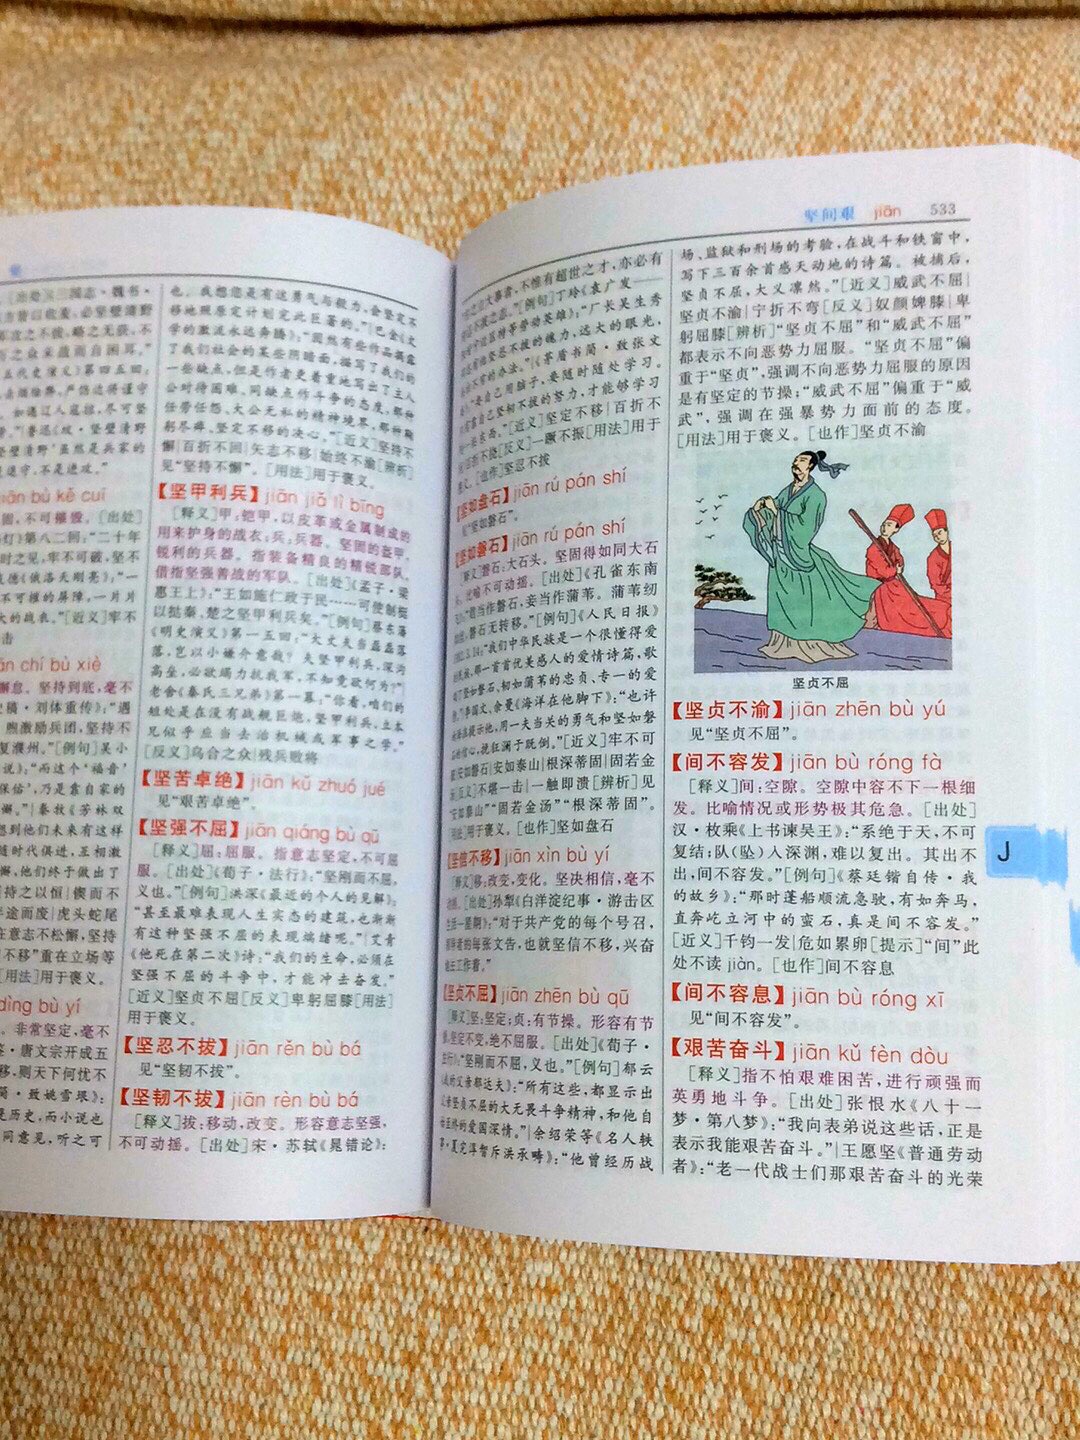 非常喜欢这本成语大词典，有图还有彩色的成语和解释，字迹清晰，特别适合孩子学成语用